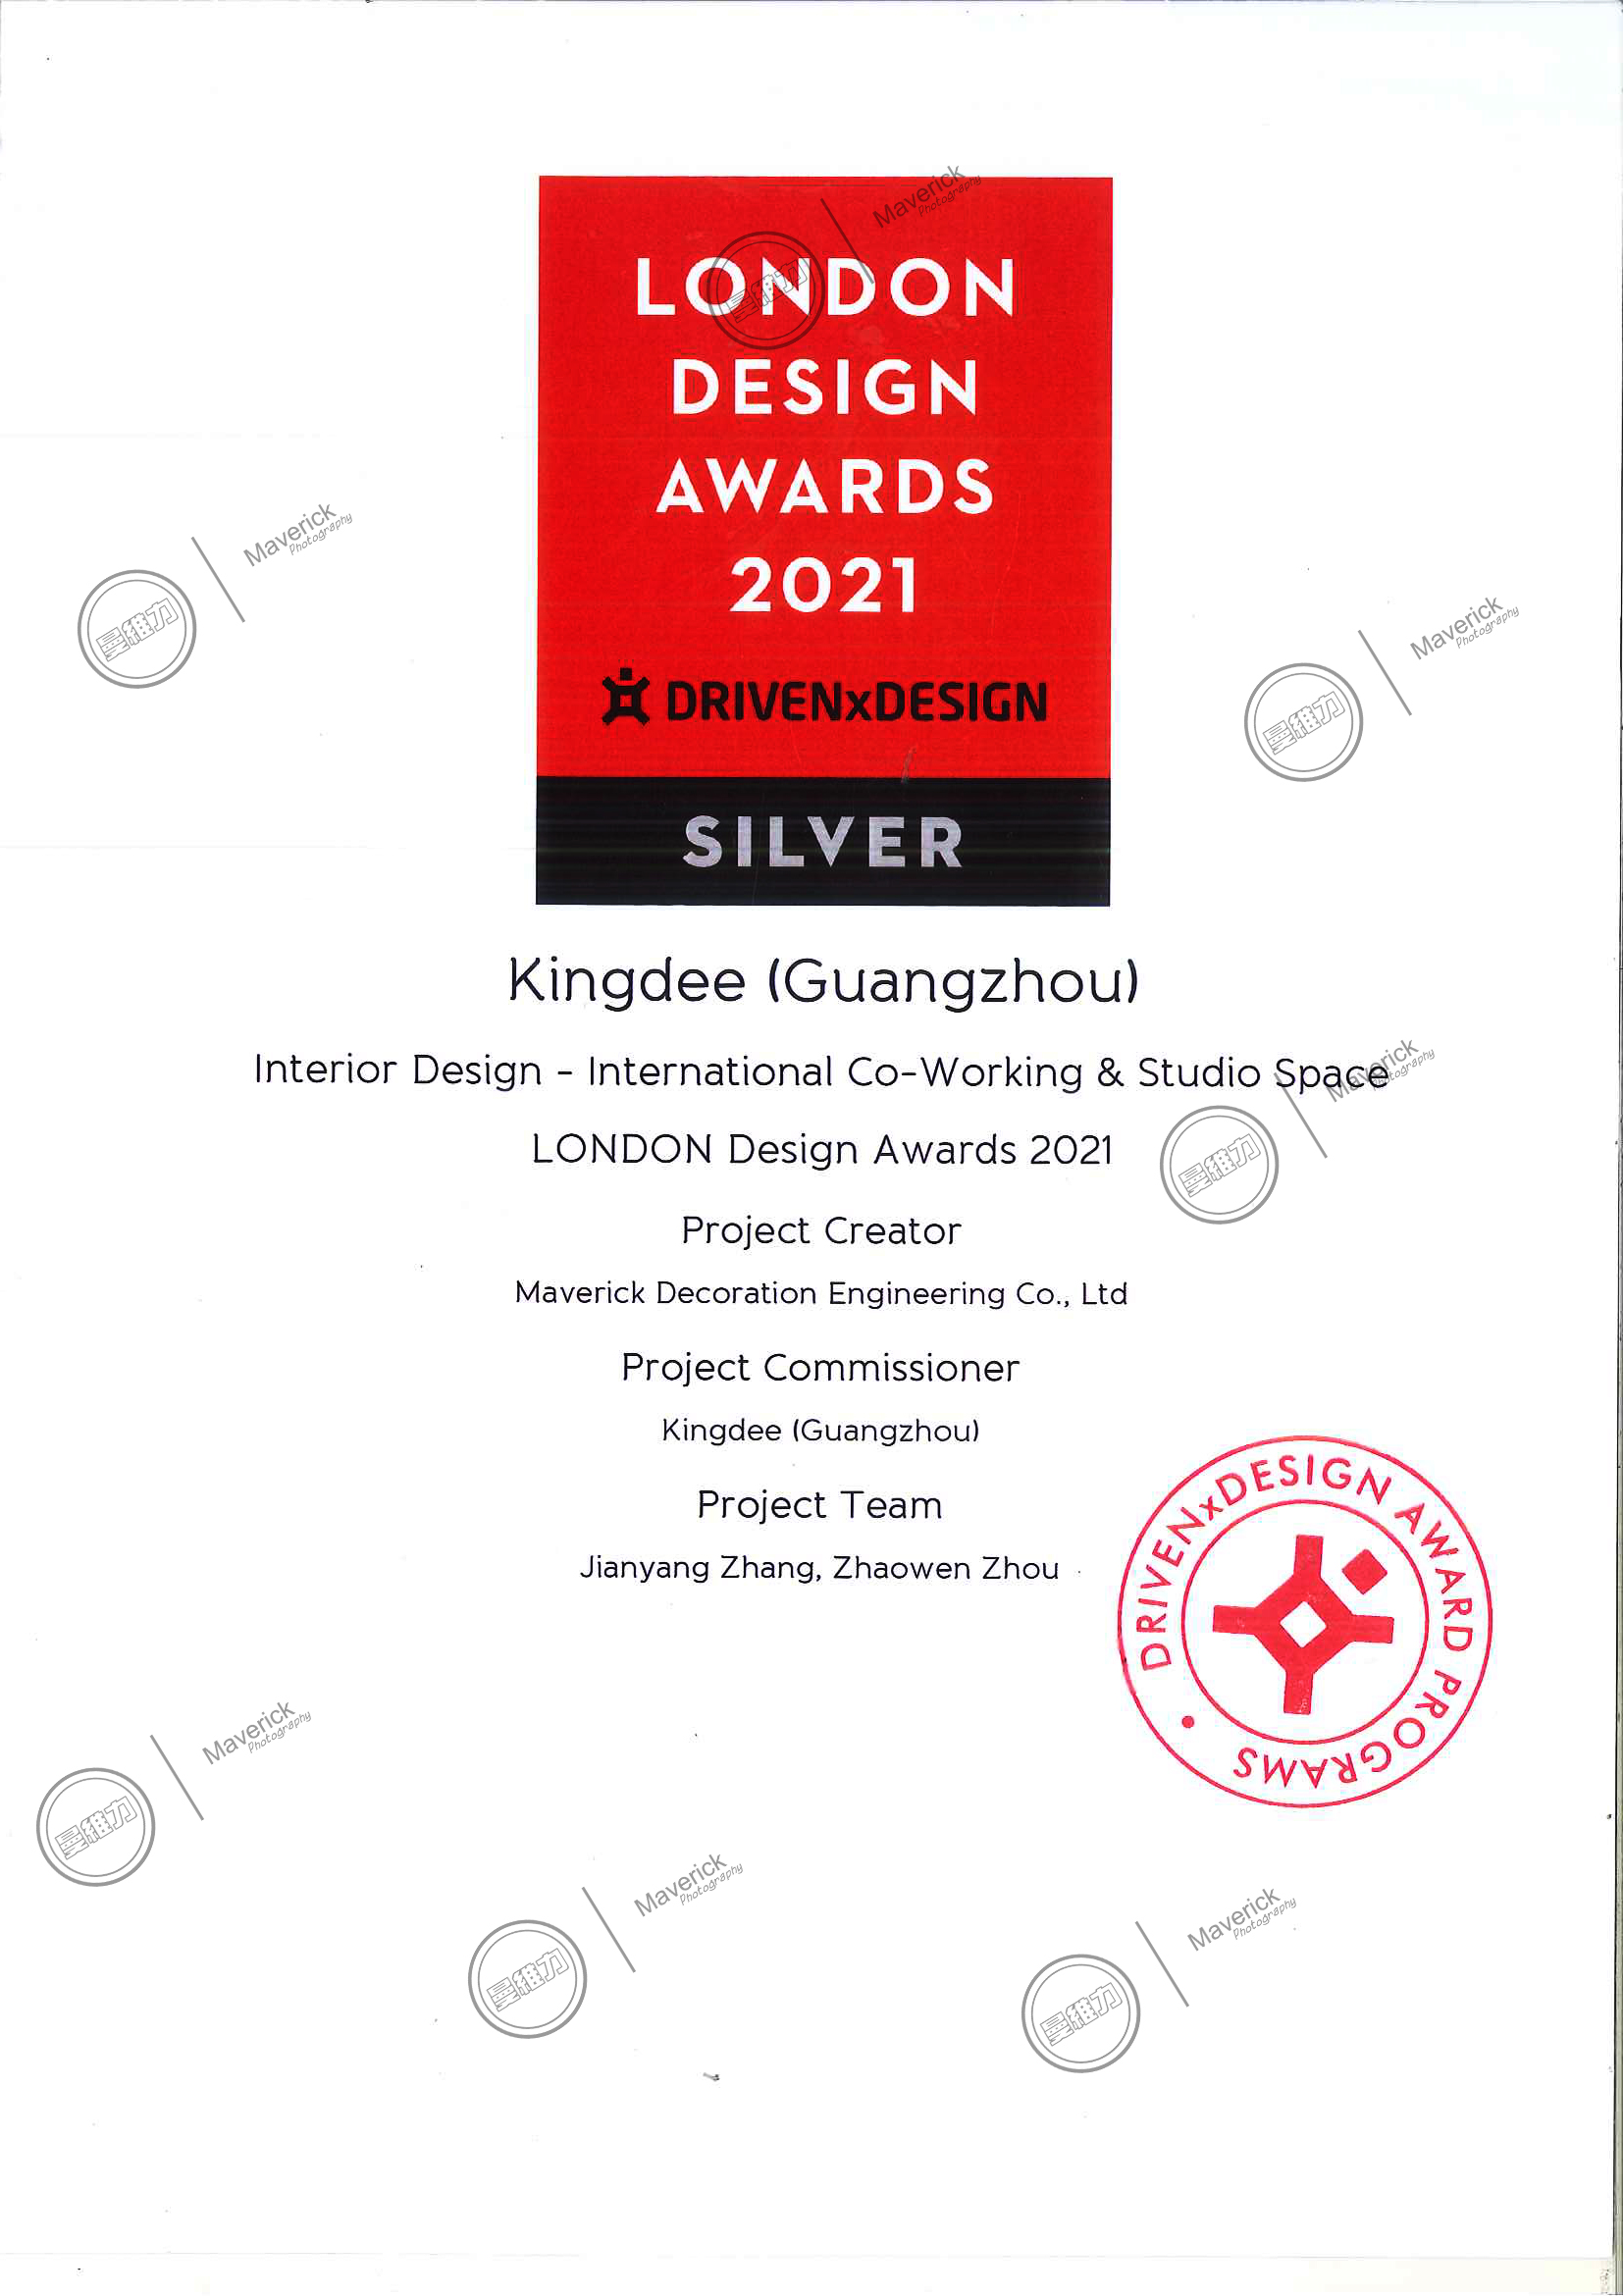 Kingdee won the London Design Award Silver Award 2021